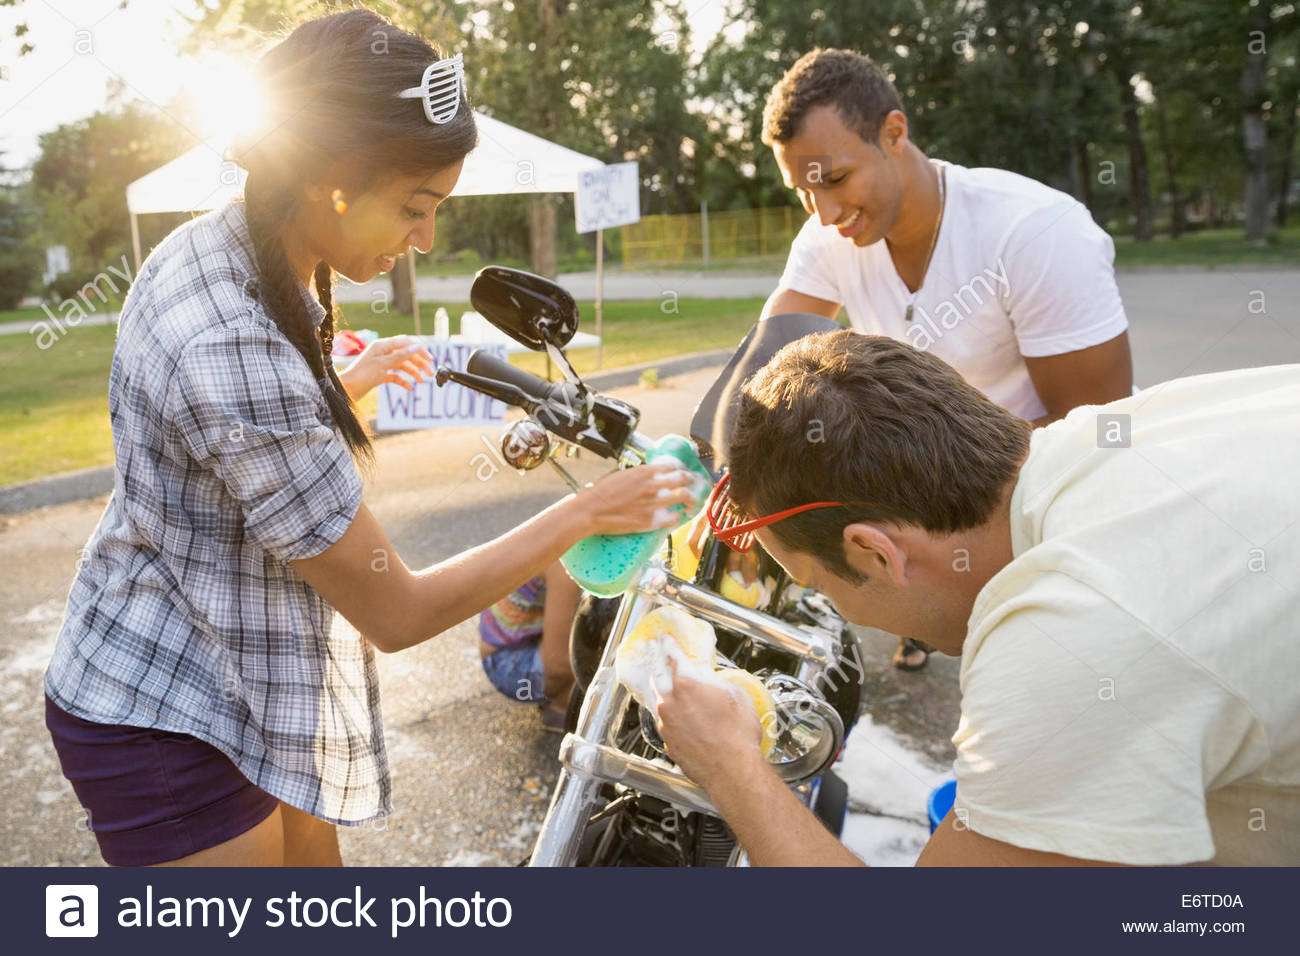 Les amis de charity moto lavage lavage de voiture Banque D'Images